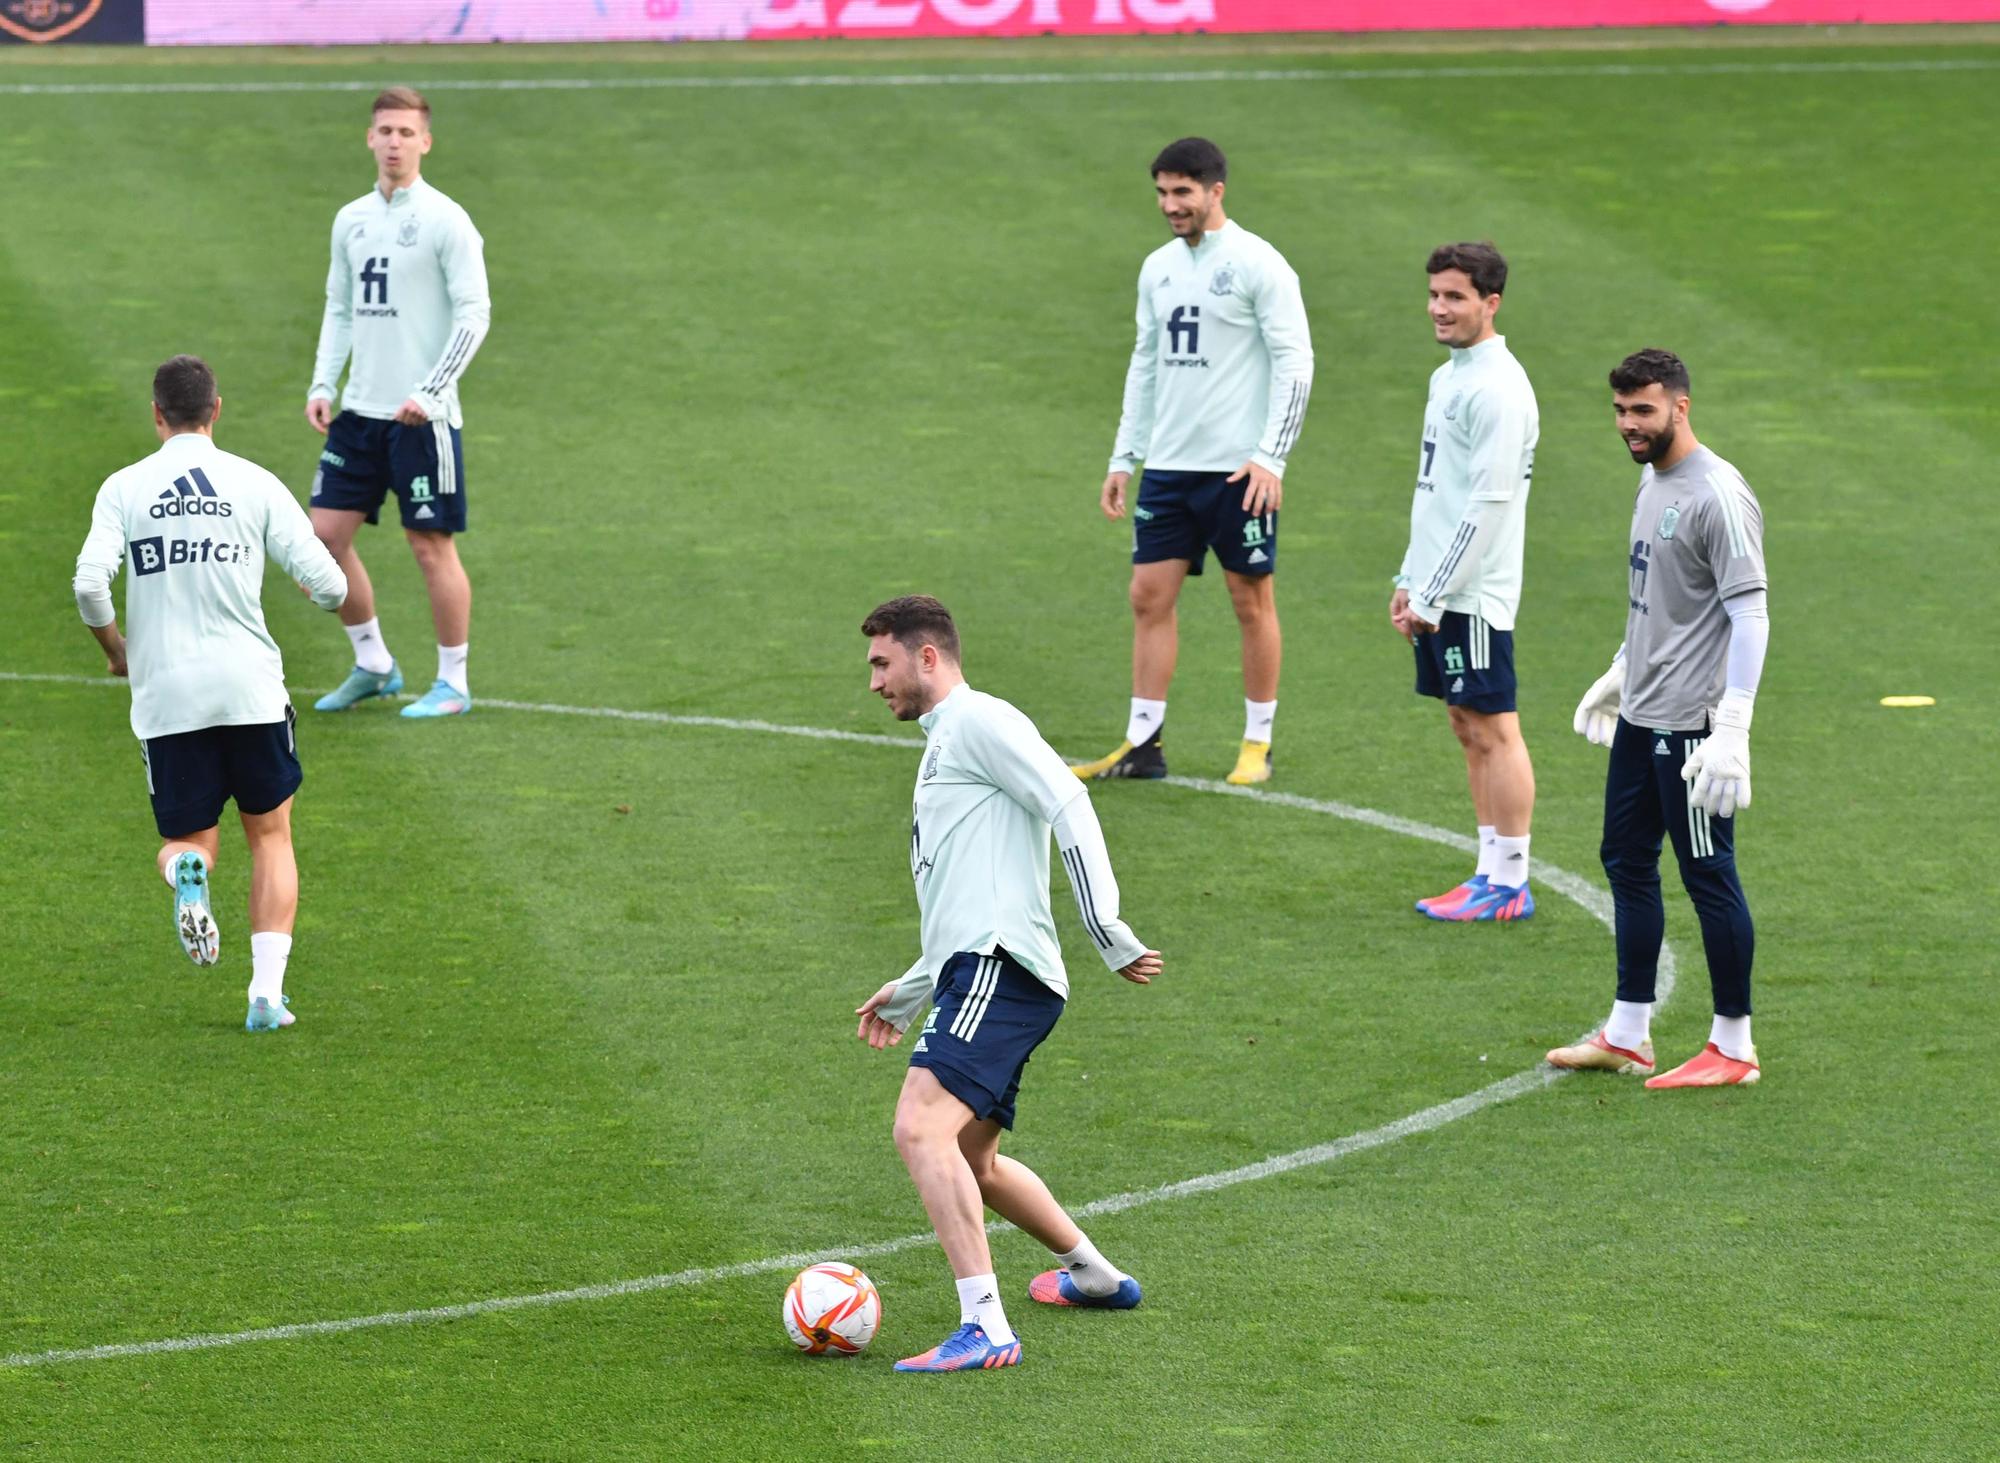 La selección española de fútbol entrena en Riazor para el partido contra Islandia